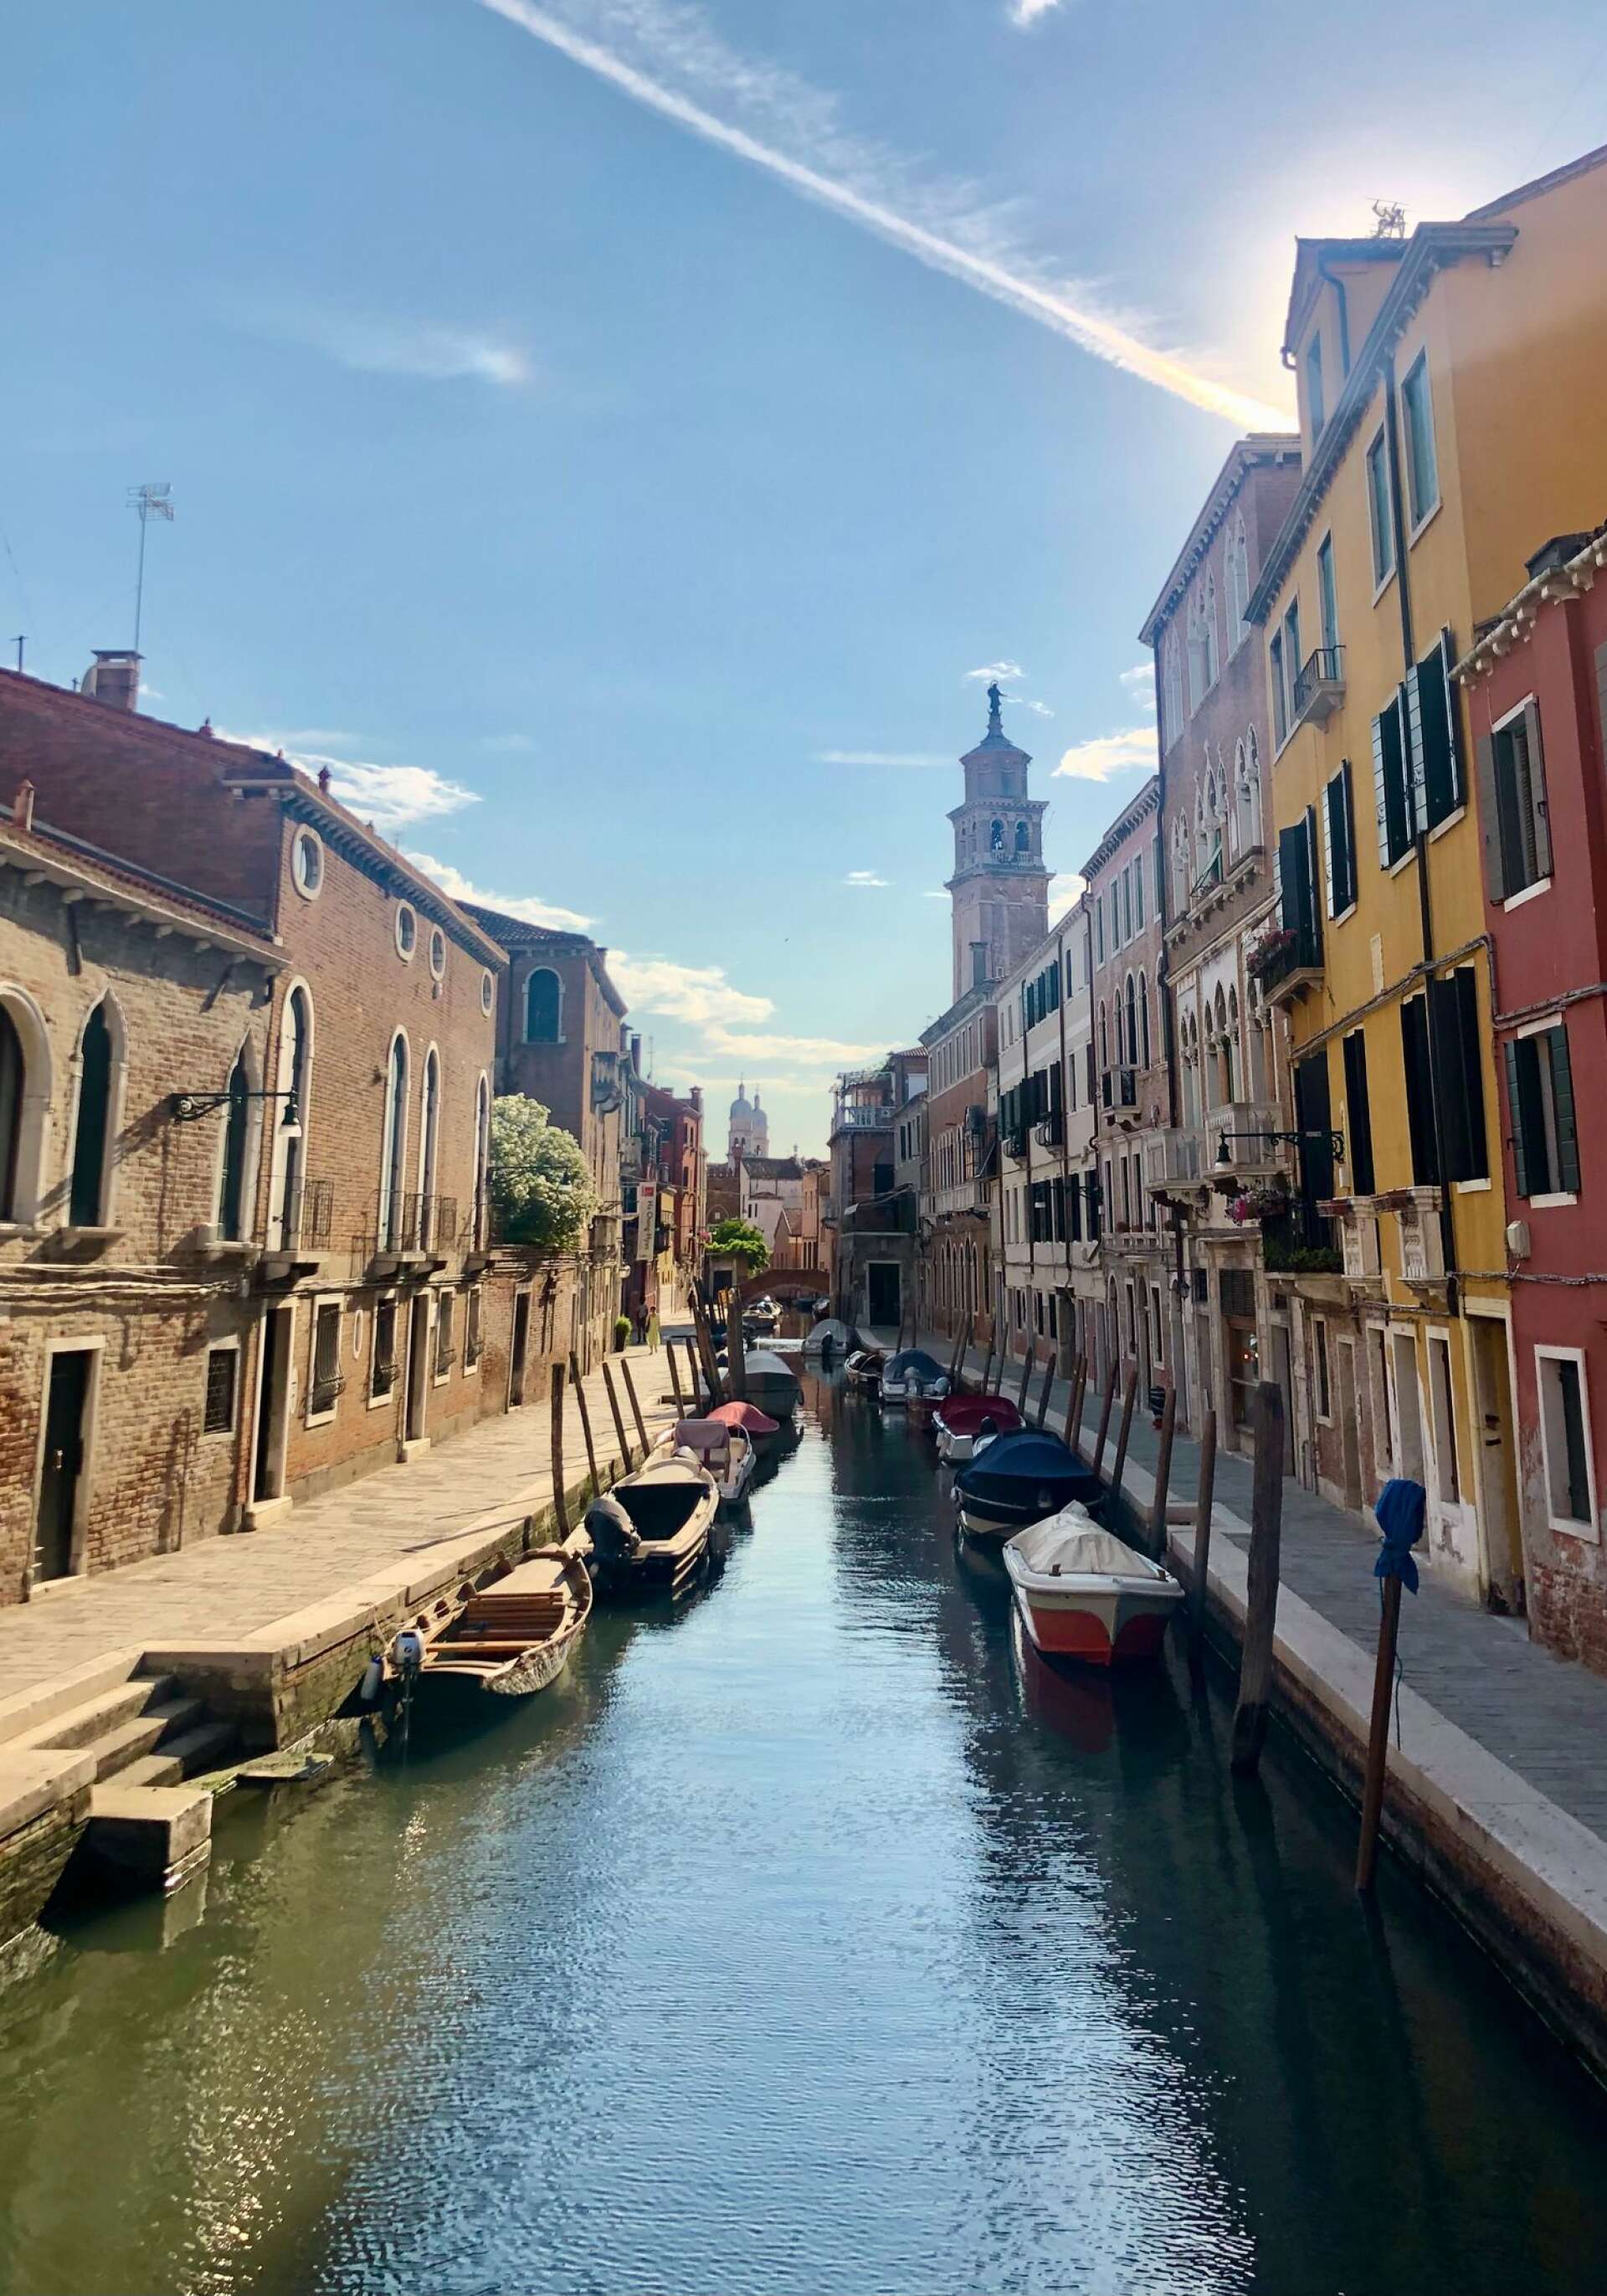 Lägg undan kartan och gå vilse i gränderna i det pittoreska Venedig, Italien. Du kommer garanterat hitta en plats du förälskar dig i! 